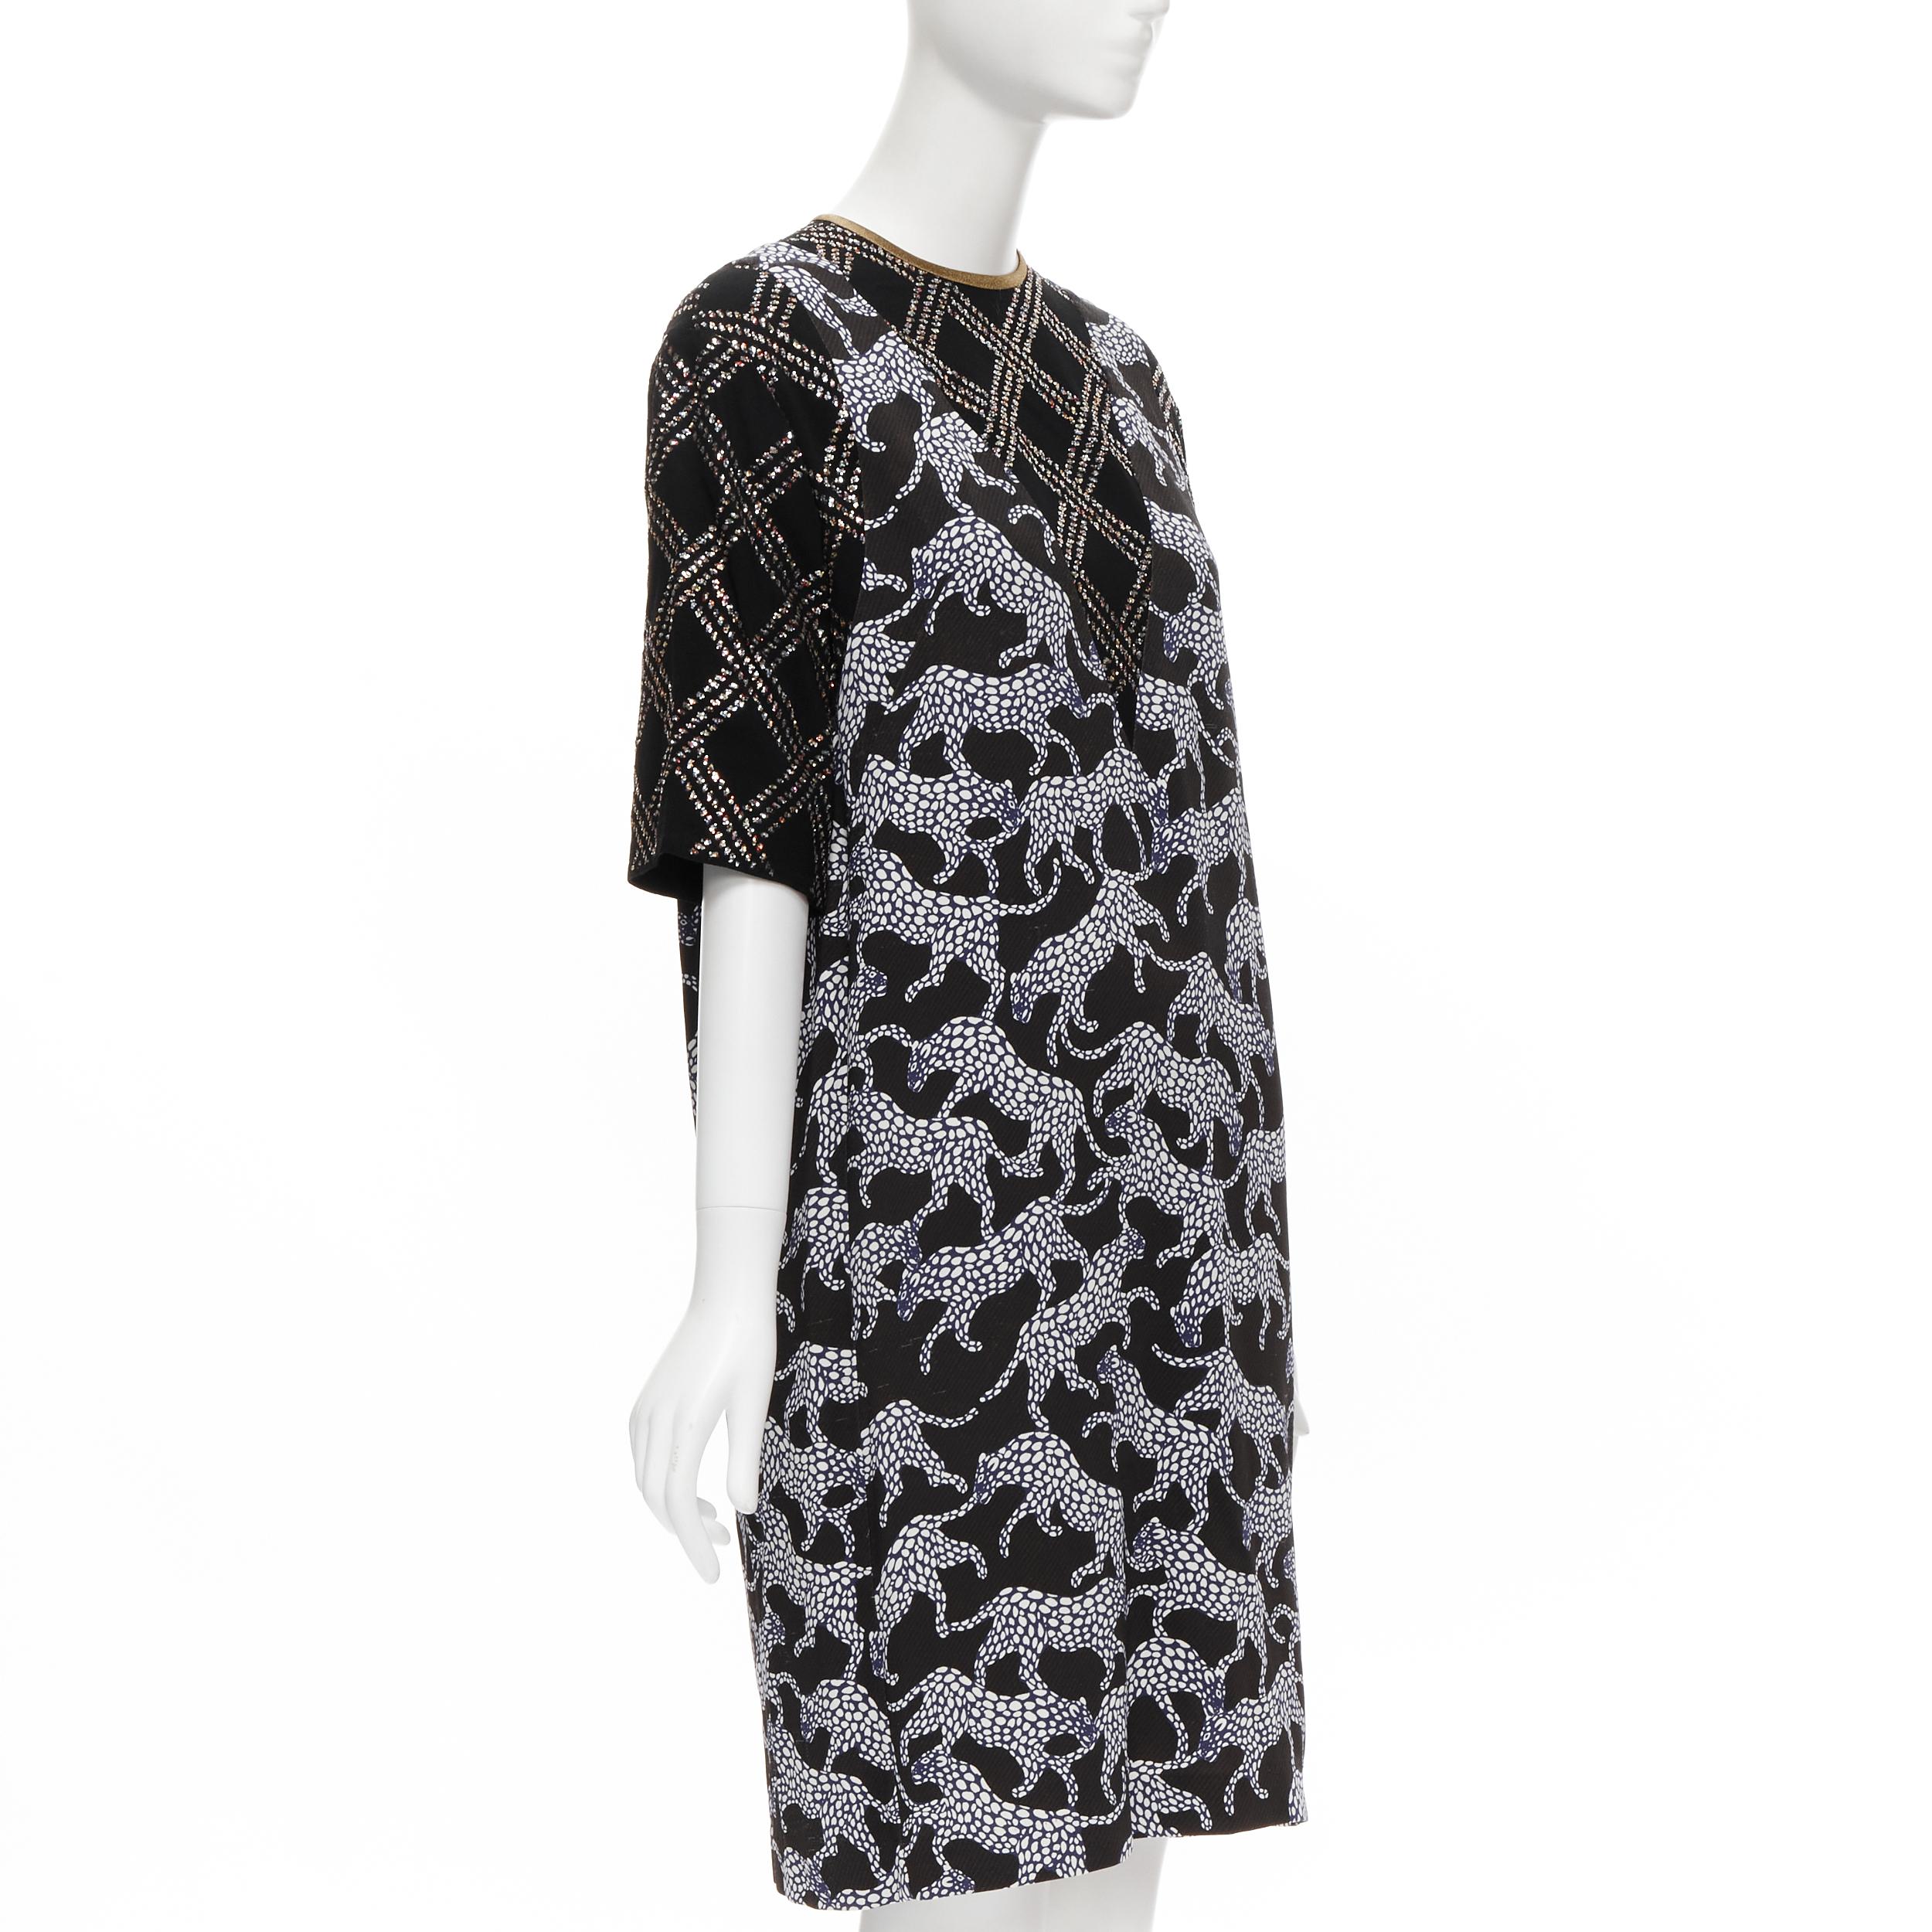 Black DRIES VAN NOTEN black glitter grid jacquard print illusion layered dress FR36 XS